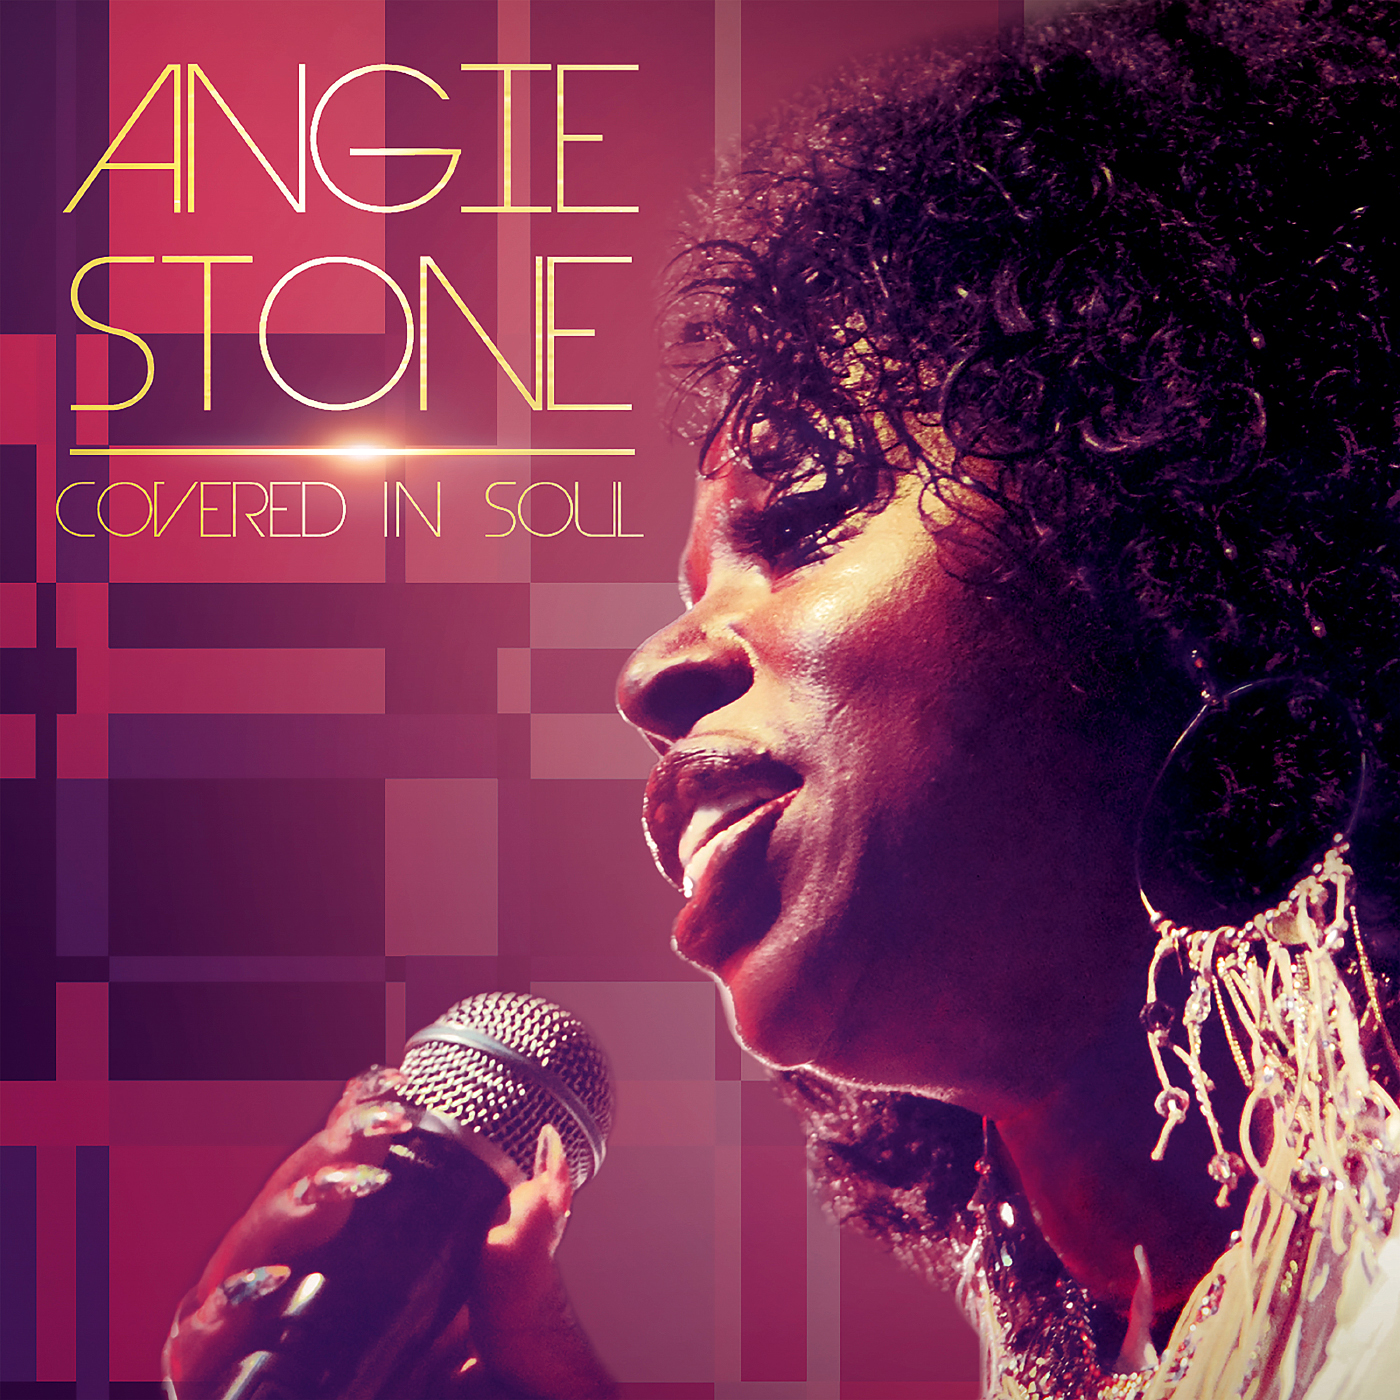  Coverfoto voor Angie Stone's album. 